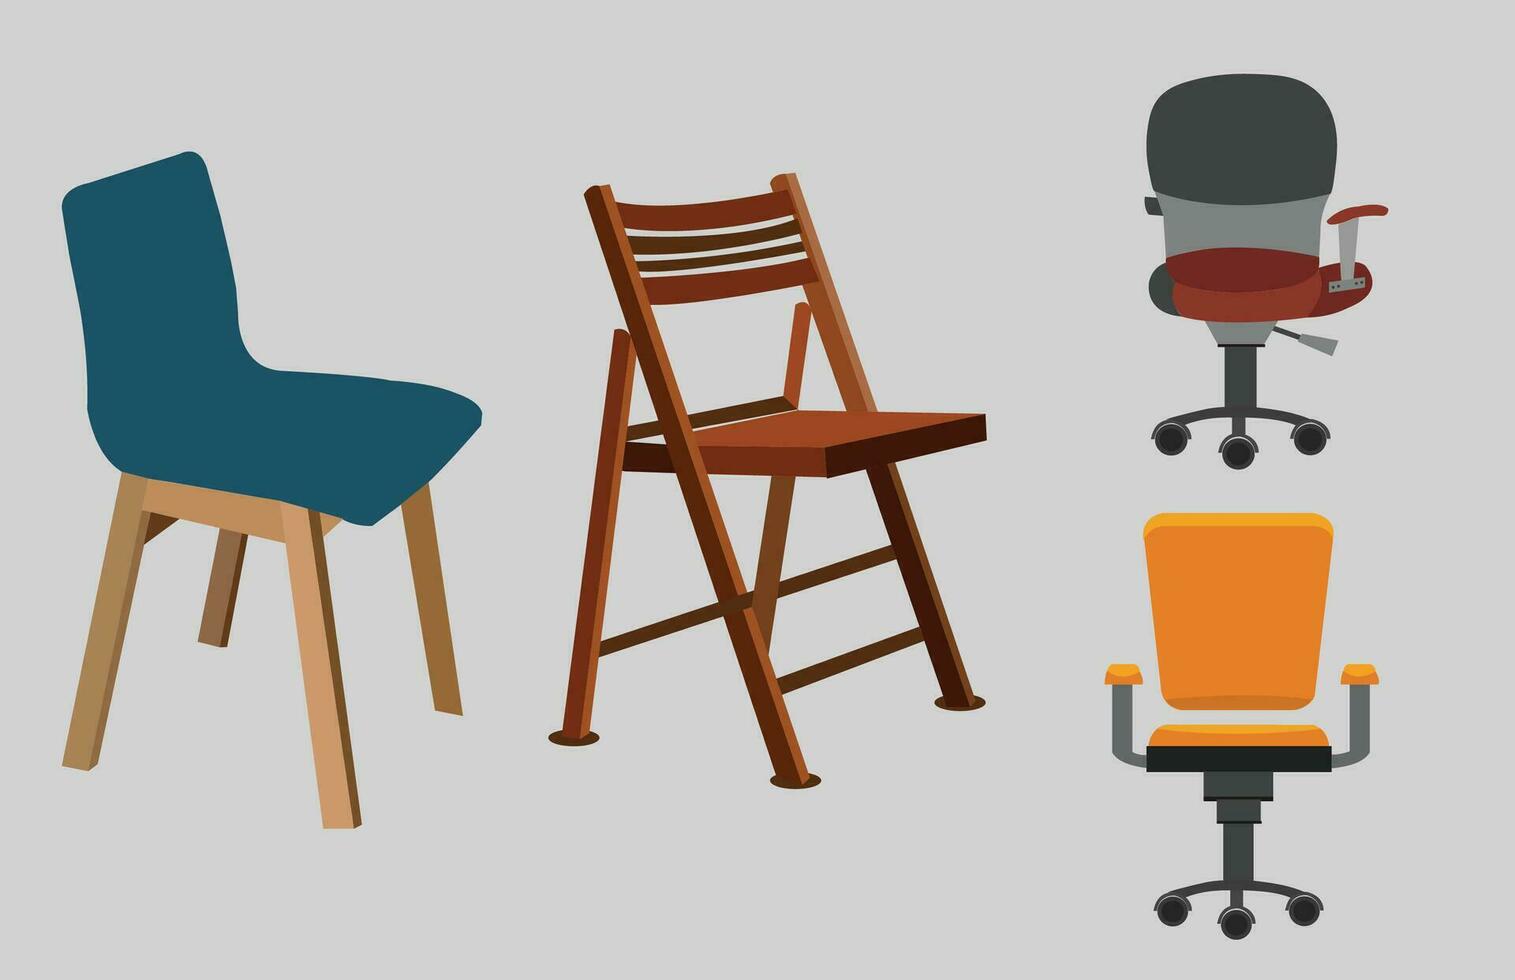 conjunto do vetor cadeiras do diferente cores e formas. ilustração.